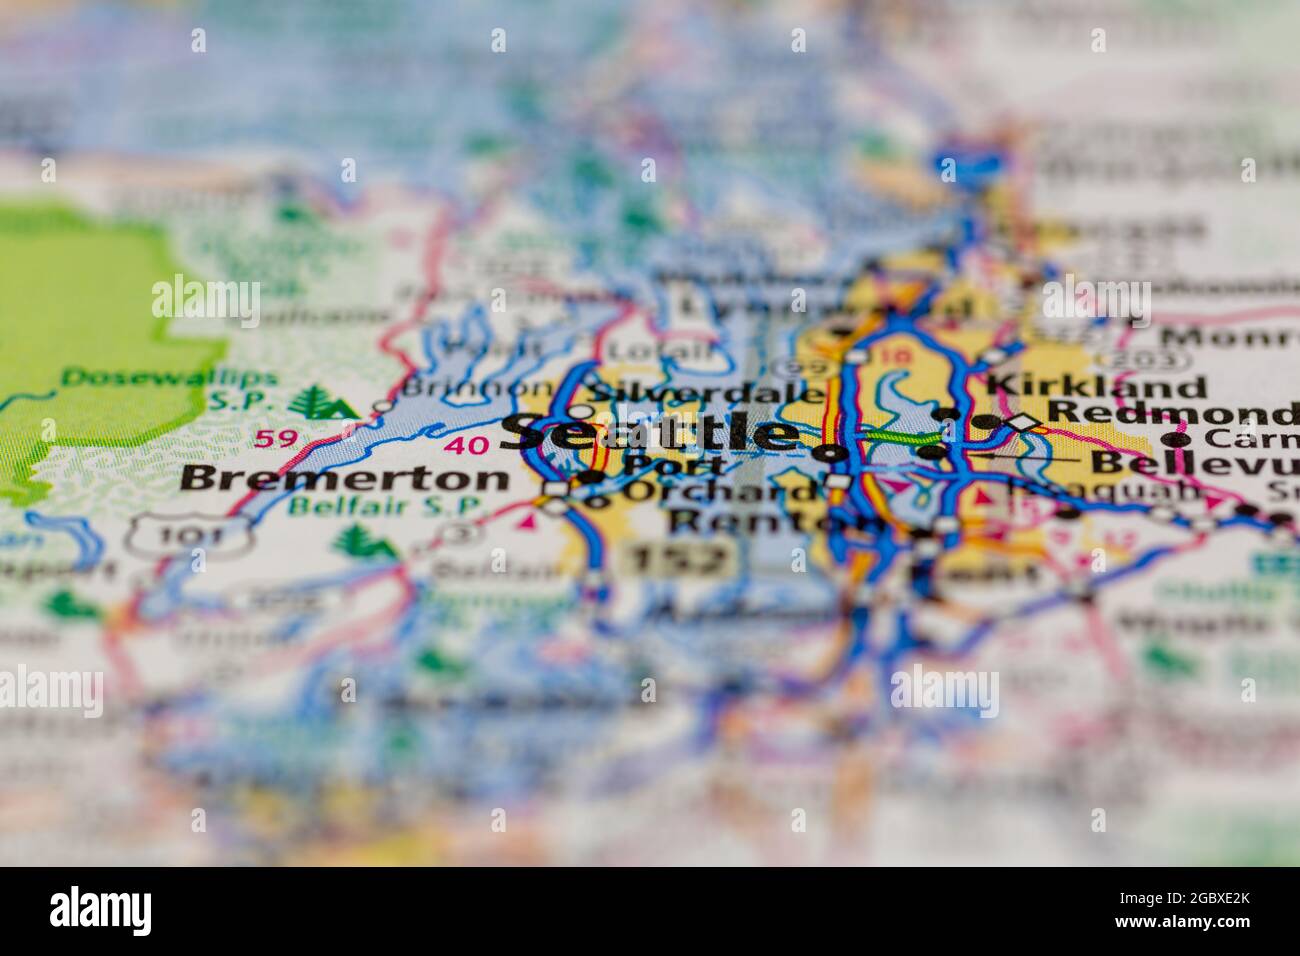 Seattle Washington State USA auf einer Straßenkarte oder Geografie-Karte angezeigt Stockfoto